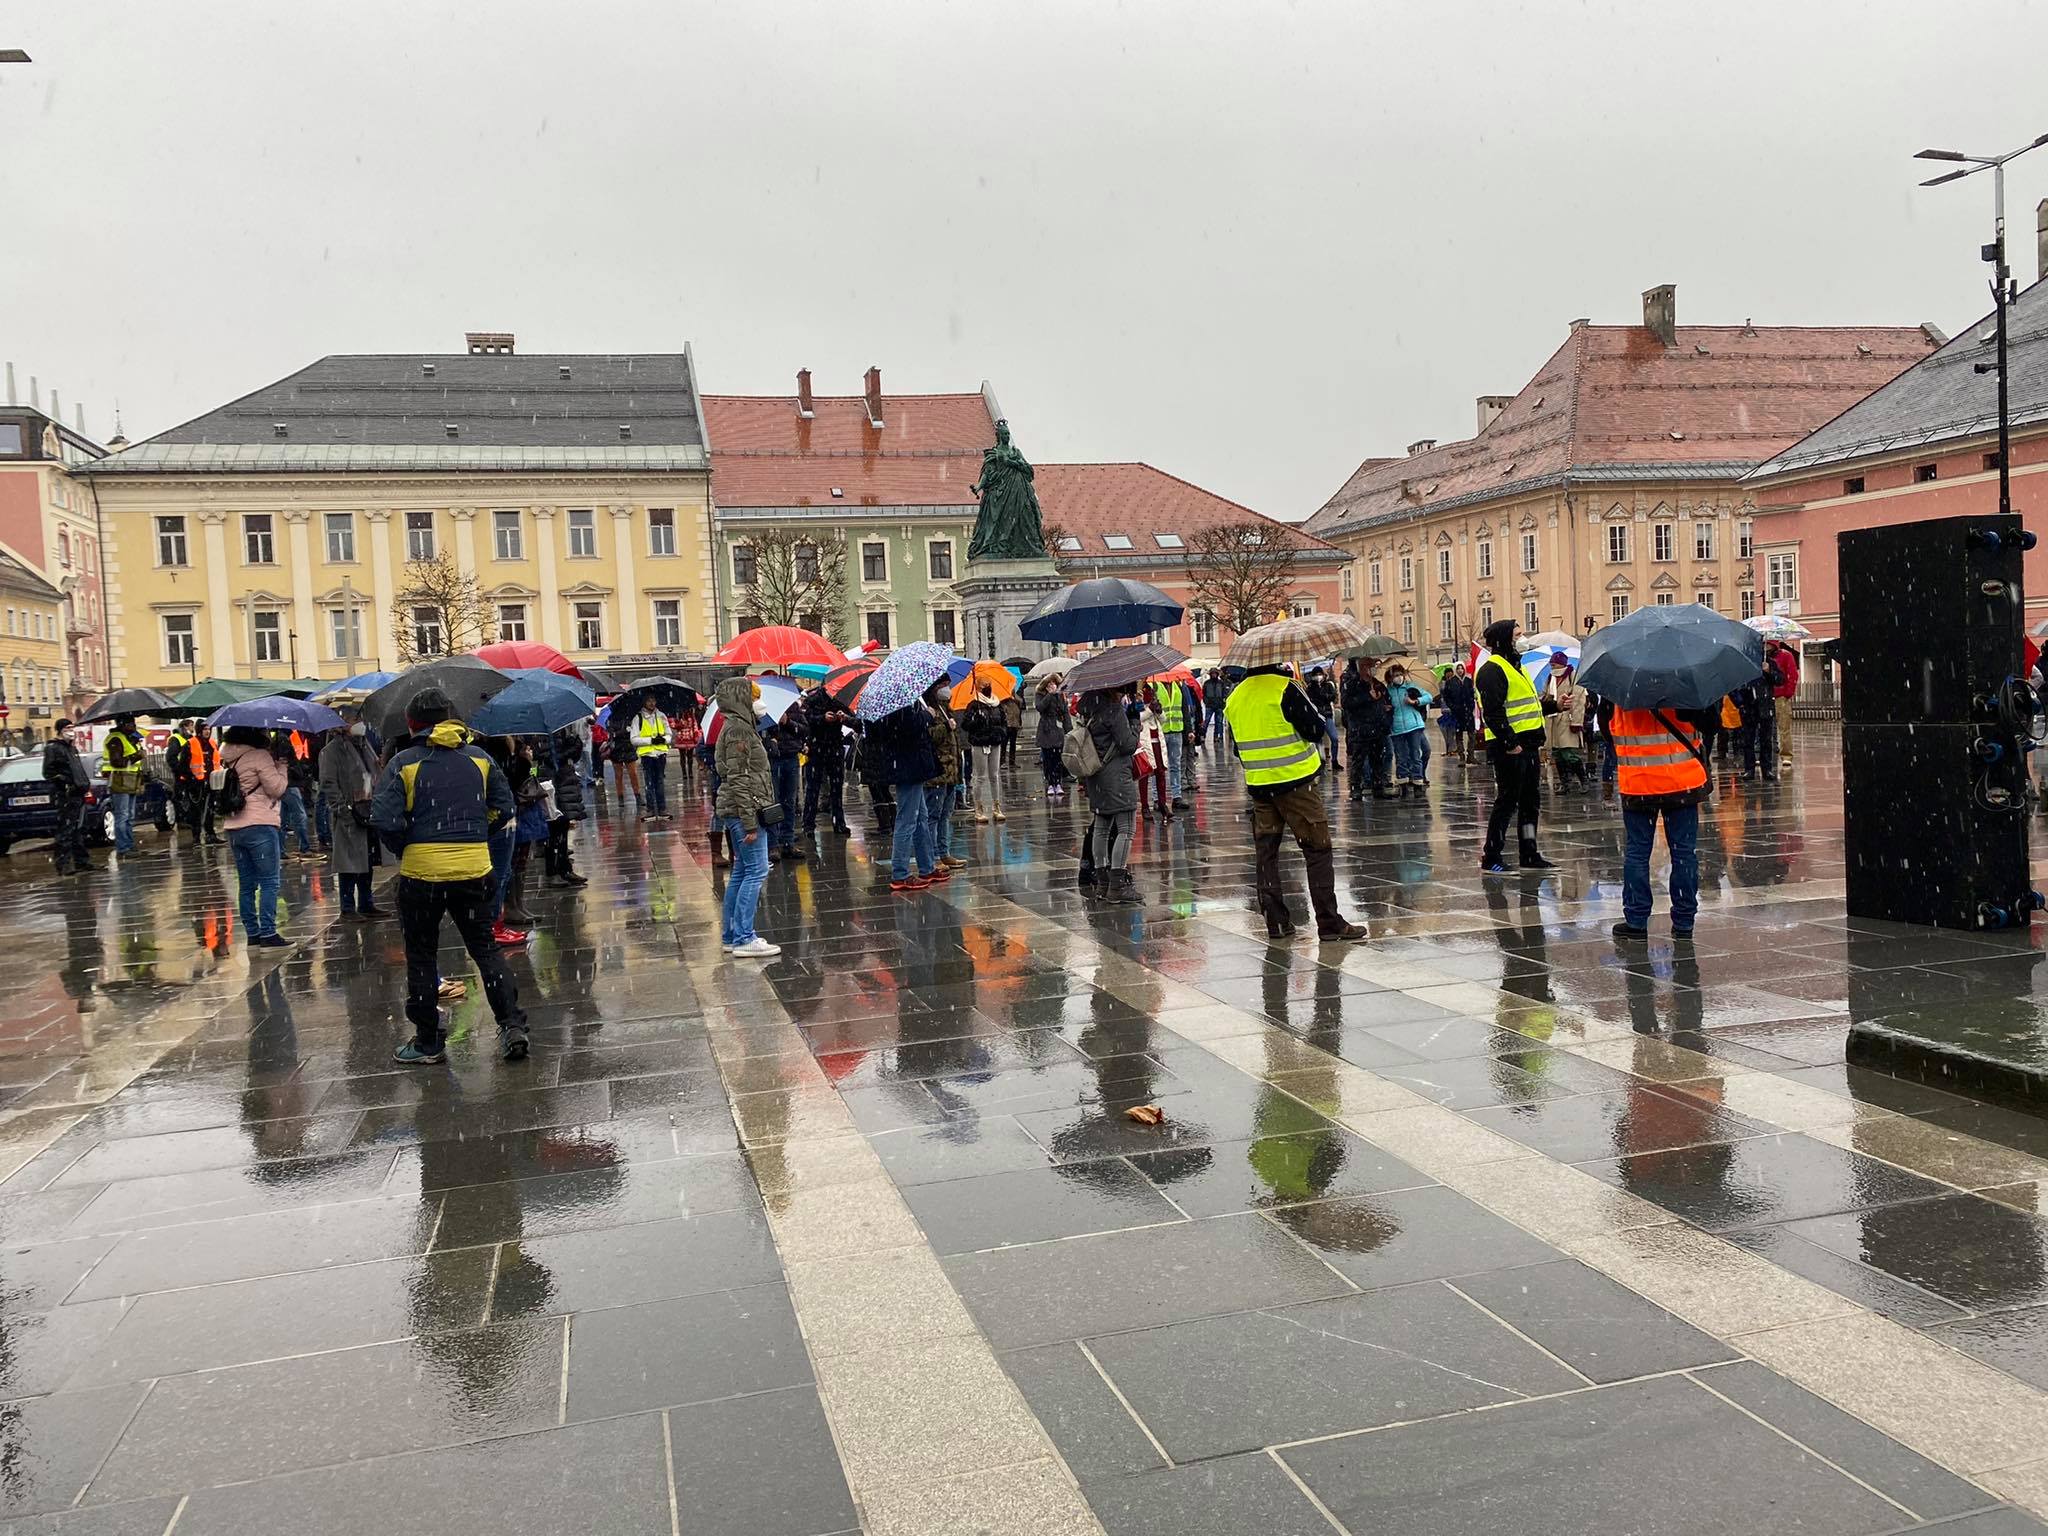 Aufgrund des schlechten Wetters haben sich am gestrigen Sonntag weniger Demonstranten am Neuen Platz versammelt als angekündigt.